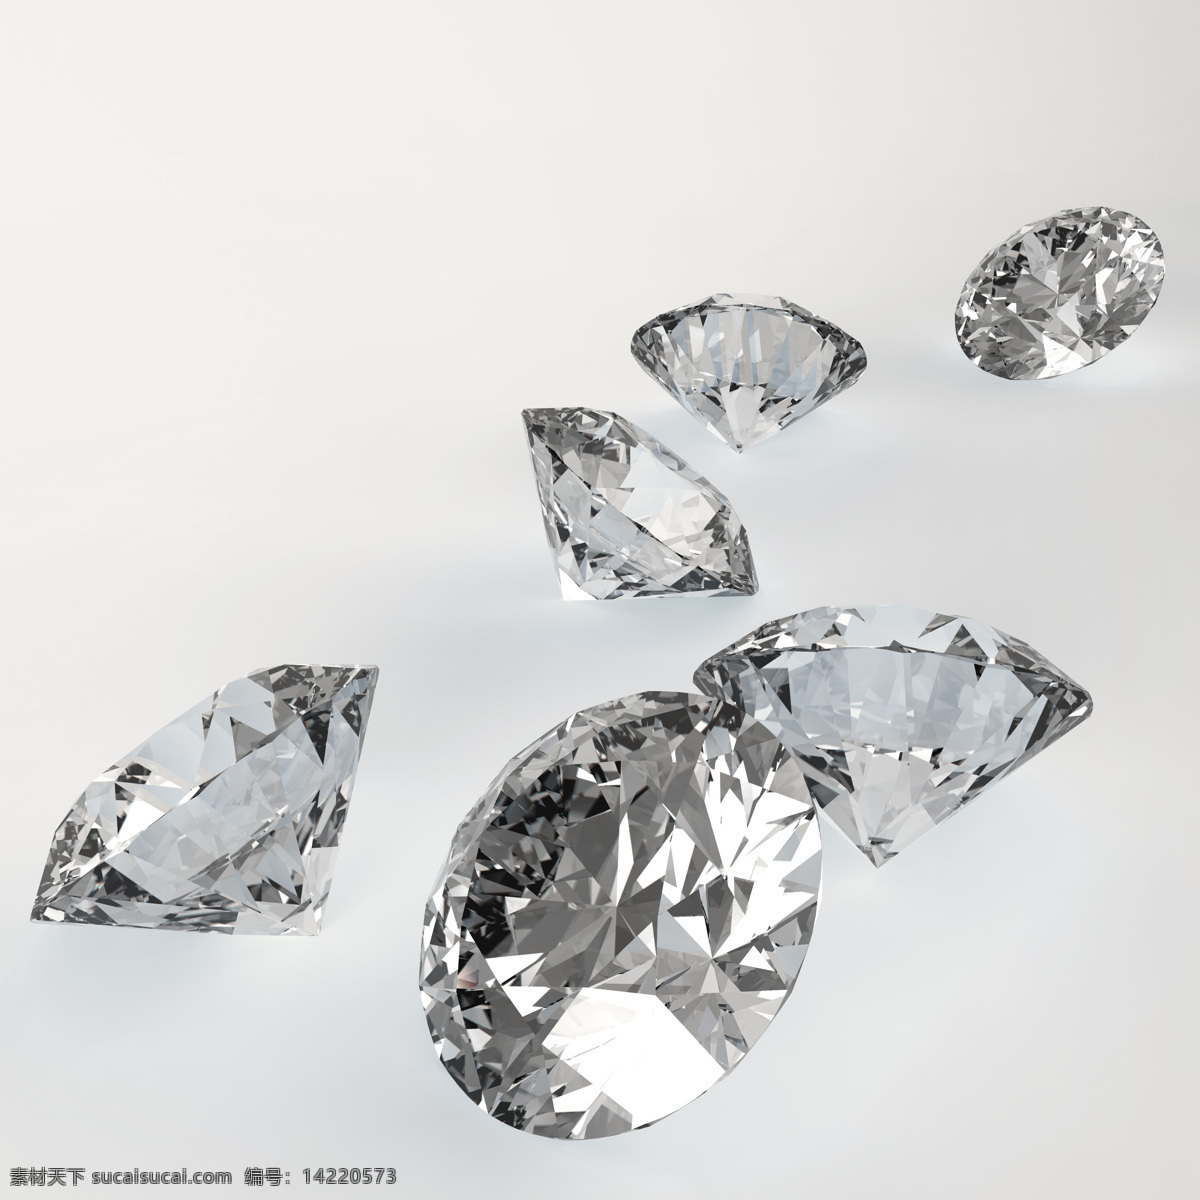 灰色 钻石 背景 灰色钻石 水晶 钻石摄影 钻石素材 珠宝 饰品 首饰 珠宝服饰 生活百科 白色